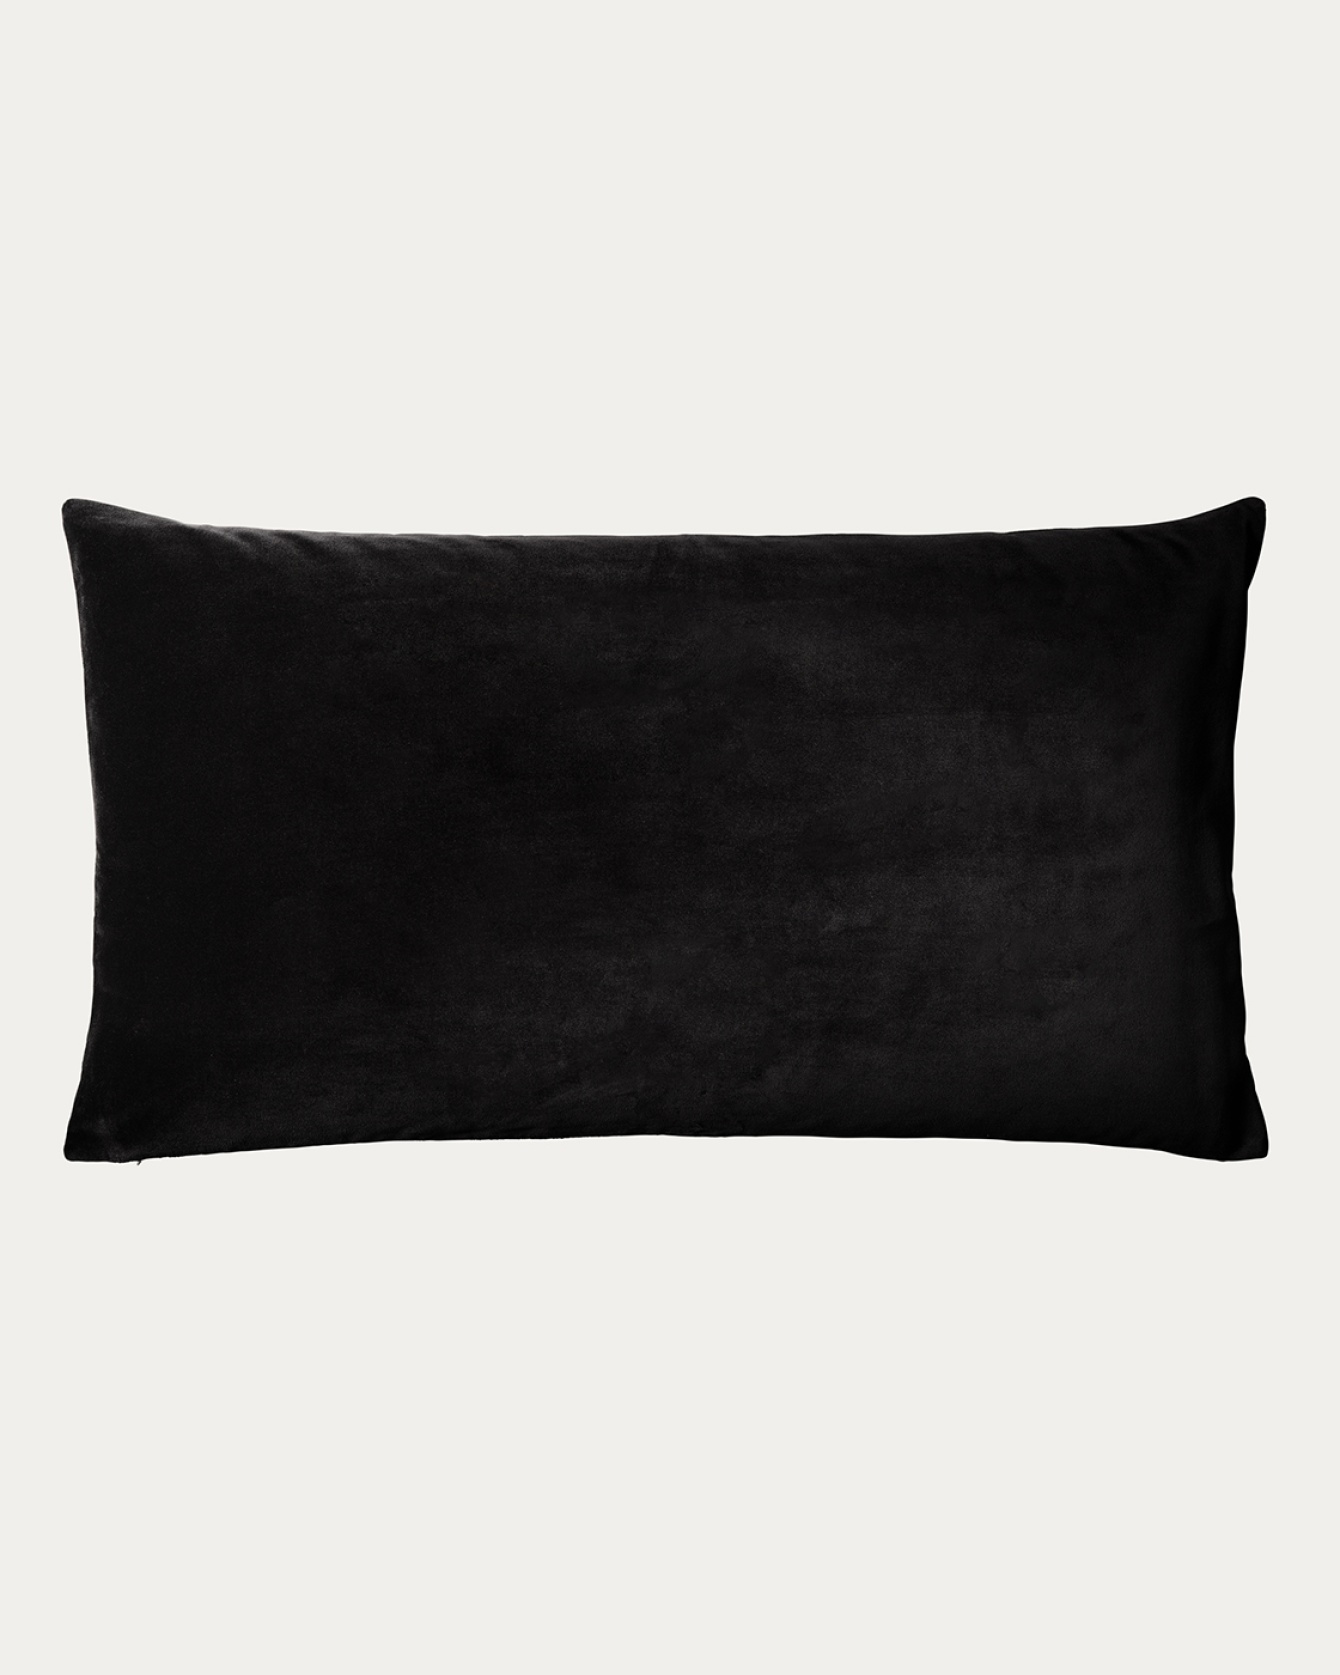 Produktbild svart PAOLO kuddfodral av mjuk ekologisk bomullssammet och 100% linne från LINUM DESIGN. Storlek 50x90 cm.